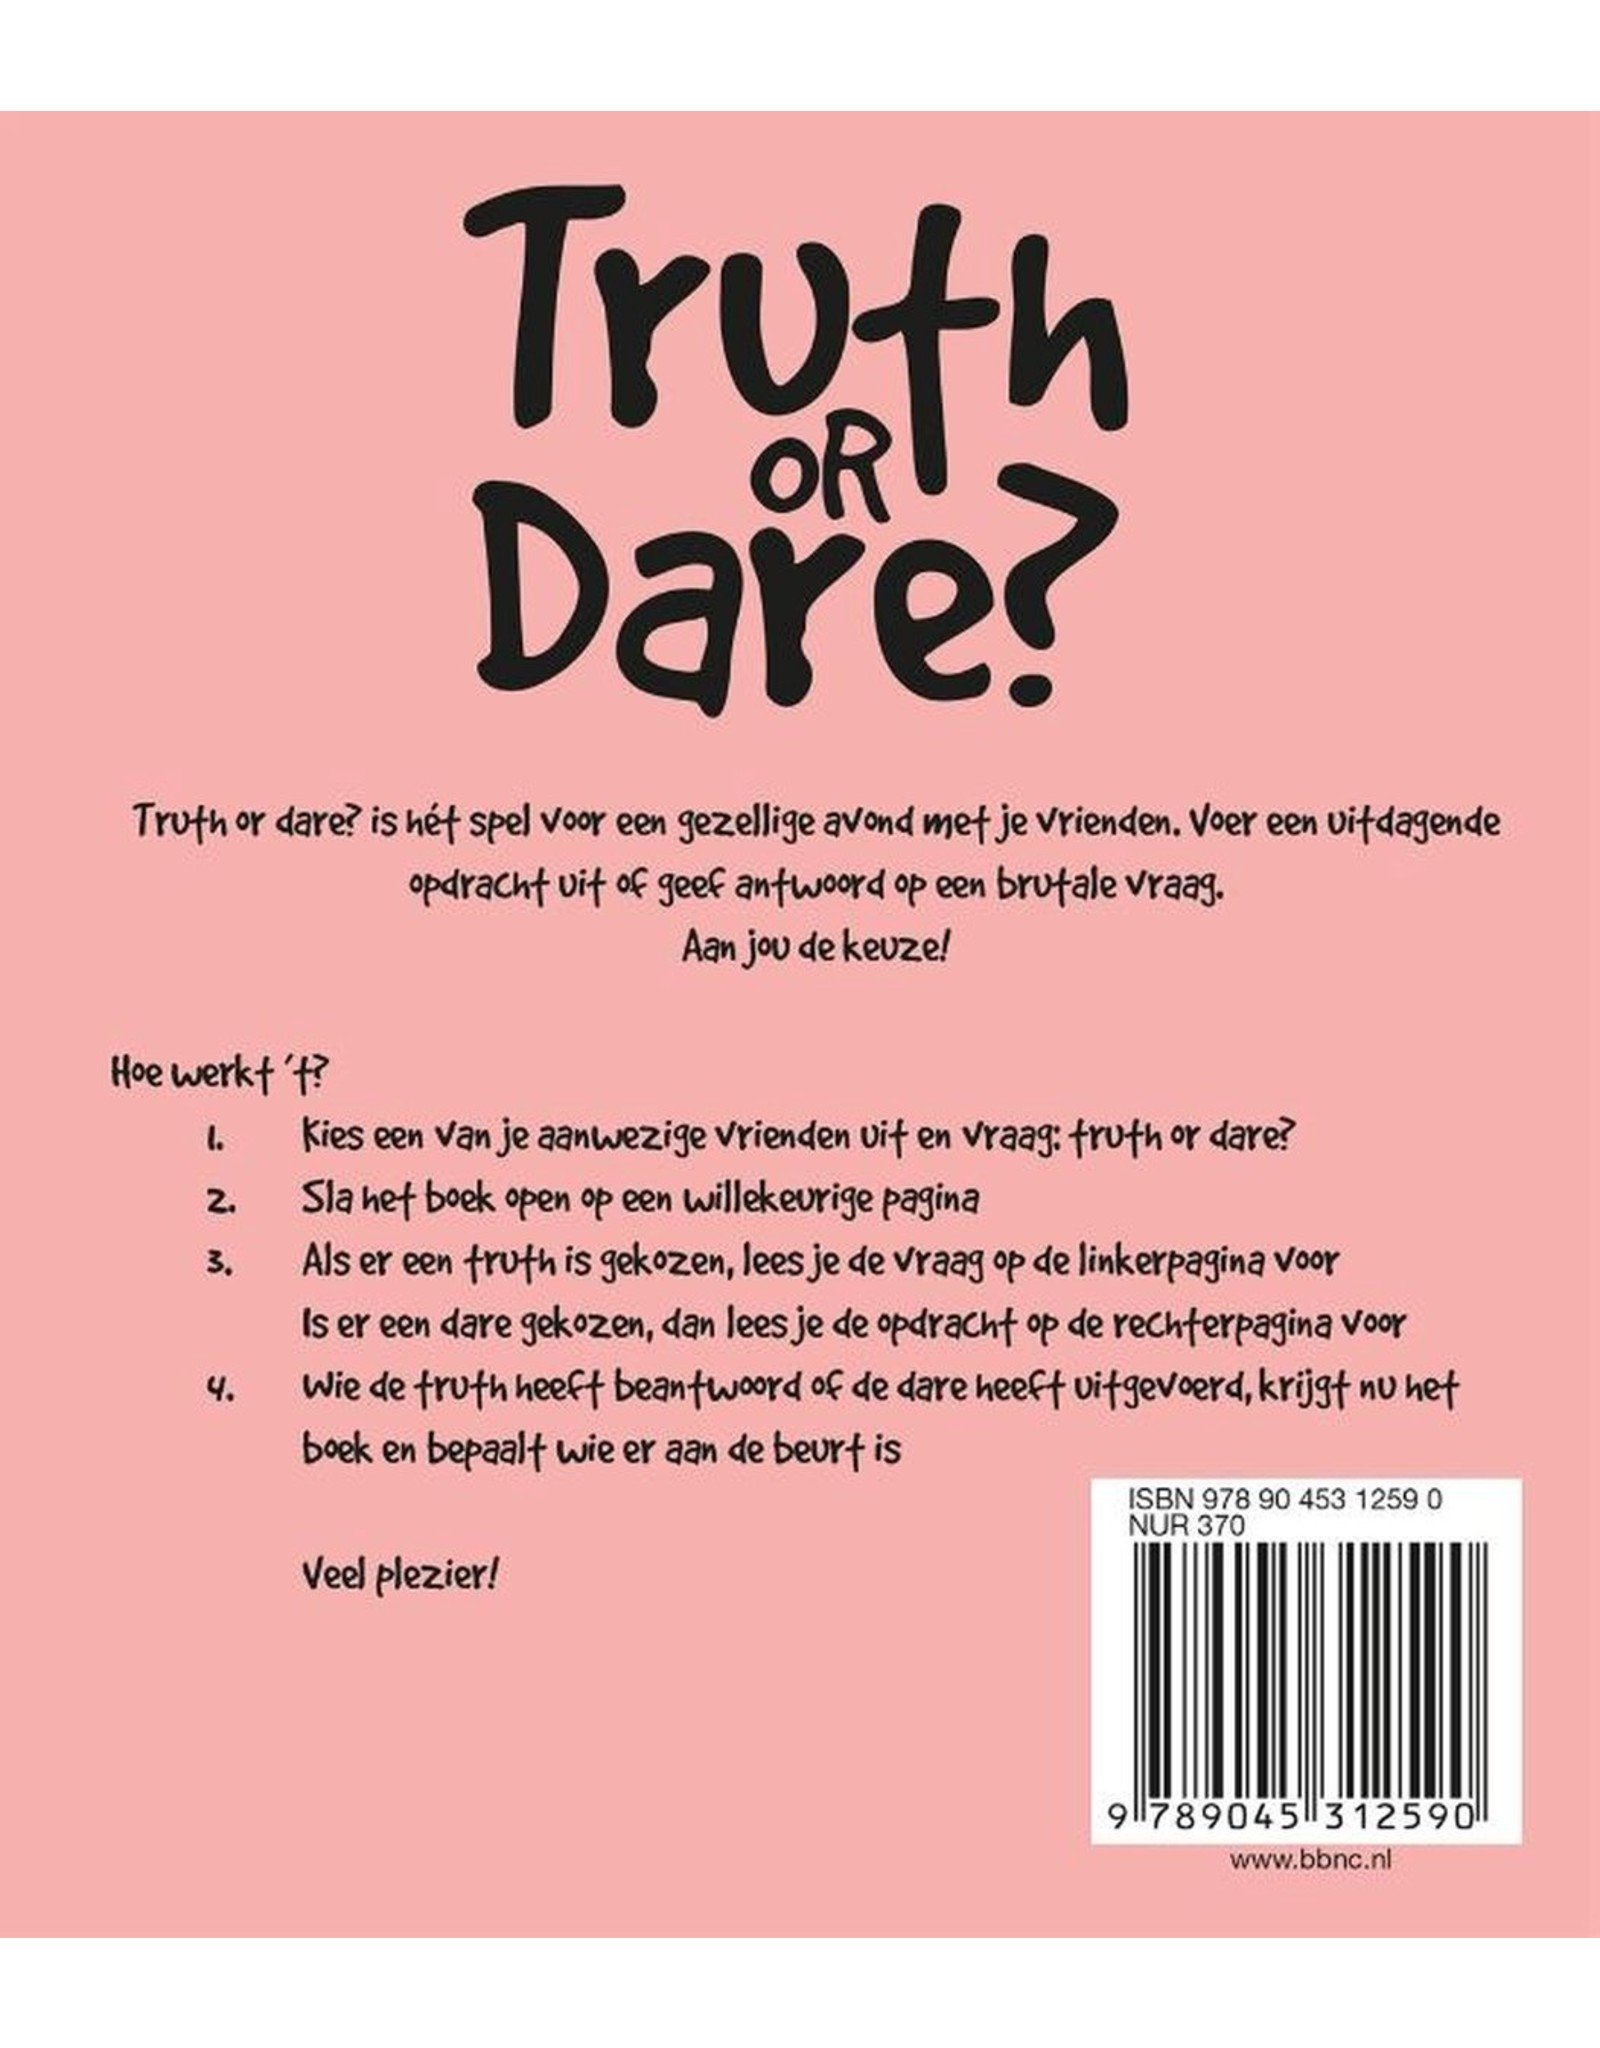 Jelly Jazz boek - truth or dare? - leer je vrienden